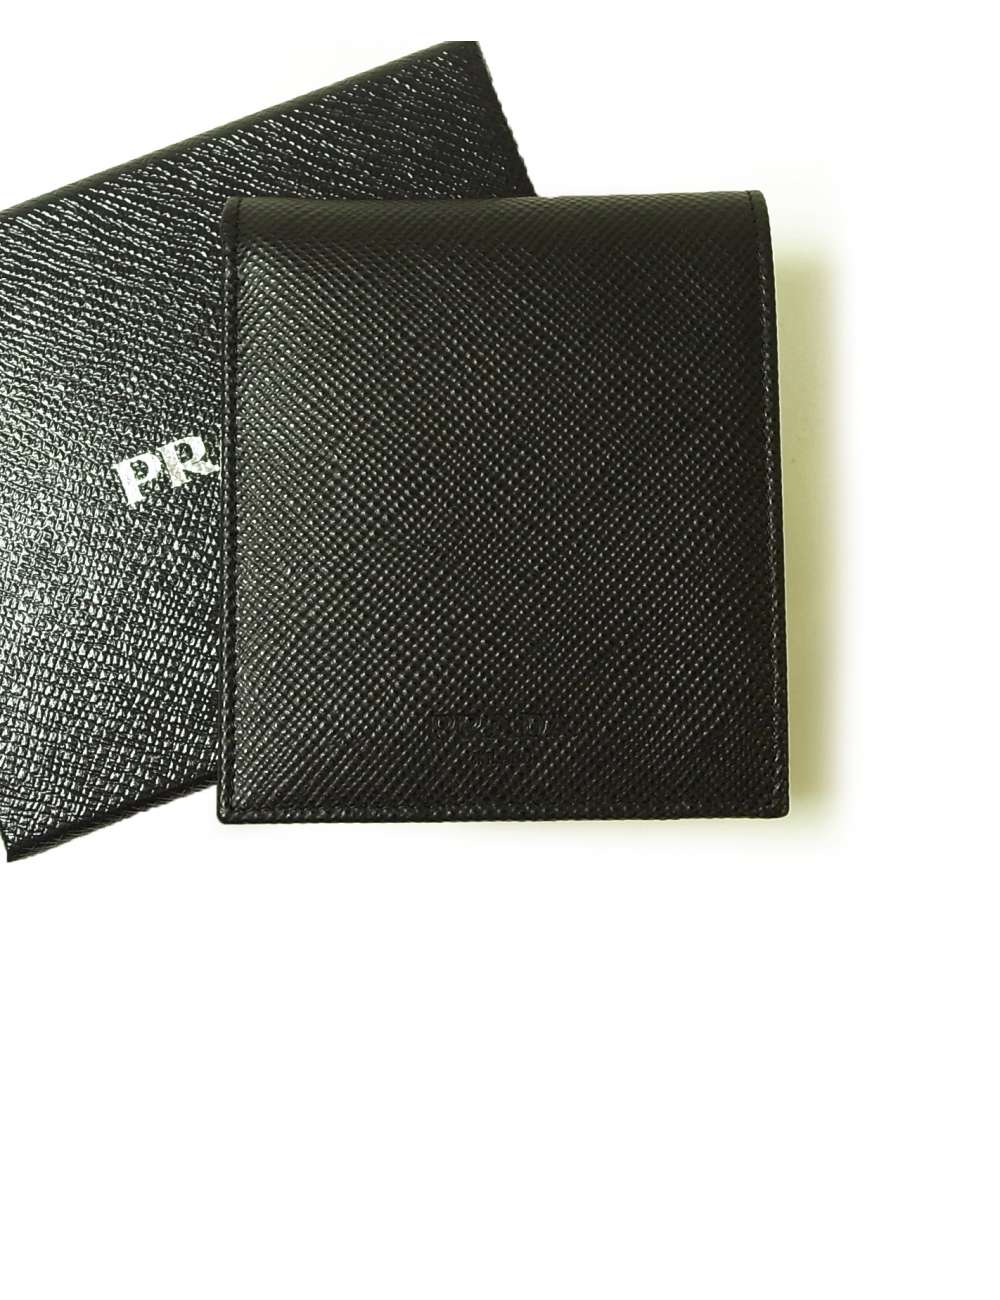 プラダ 財布 サフィアノレザー 二つ折 （ブラック） - インポートブランドショップPiazza